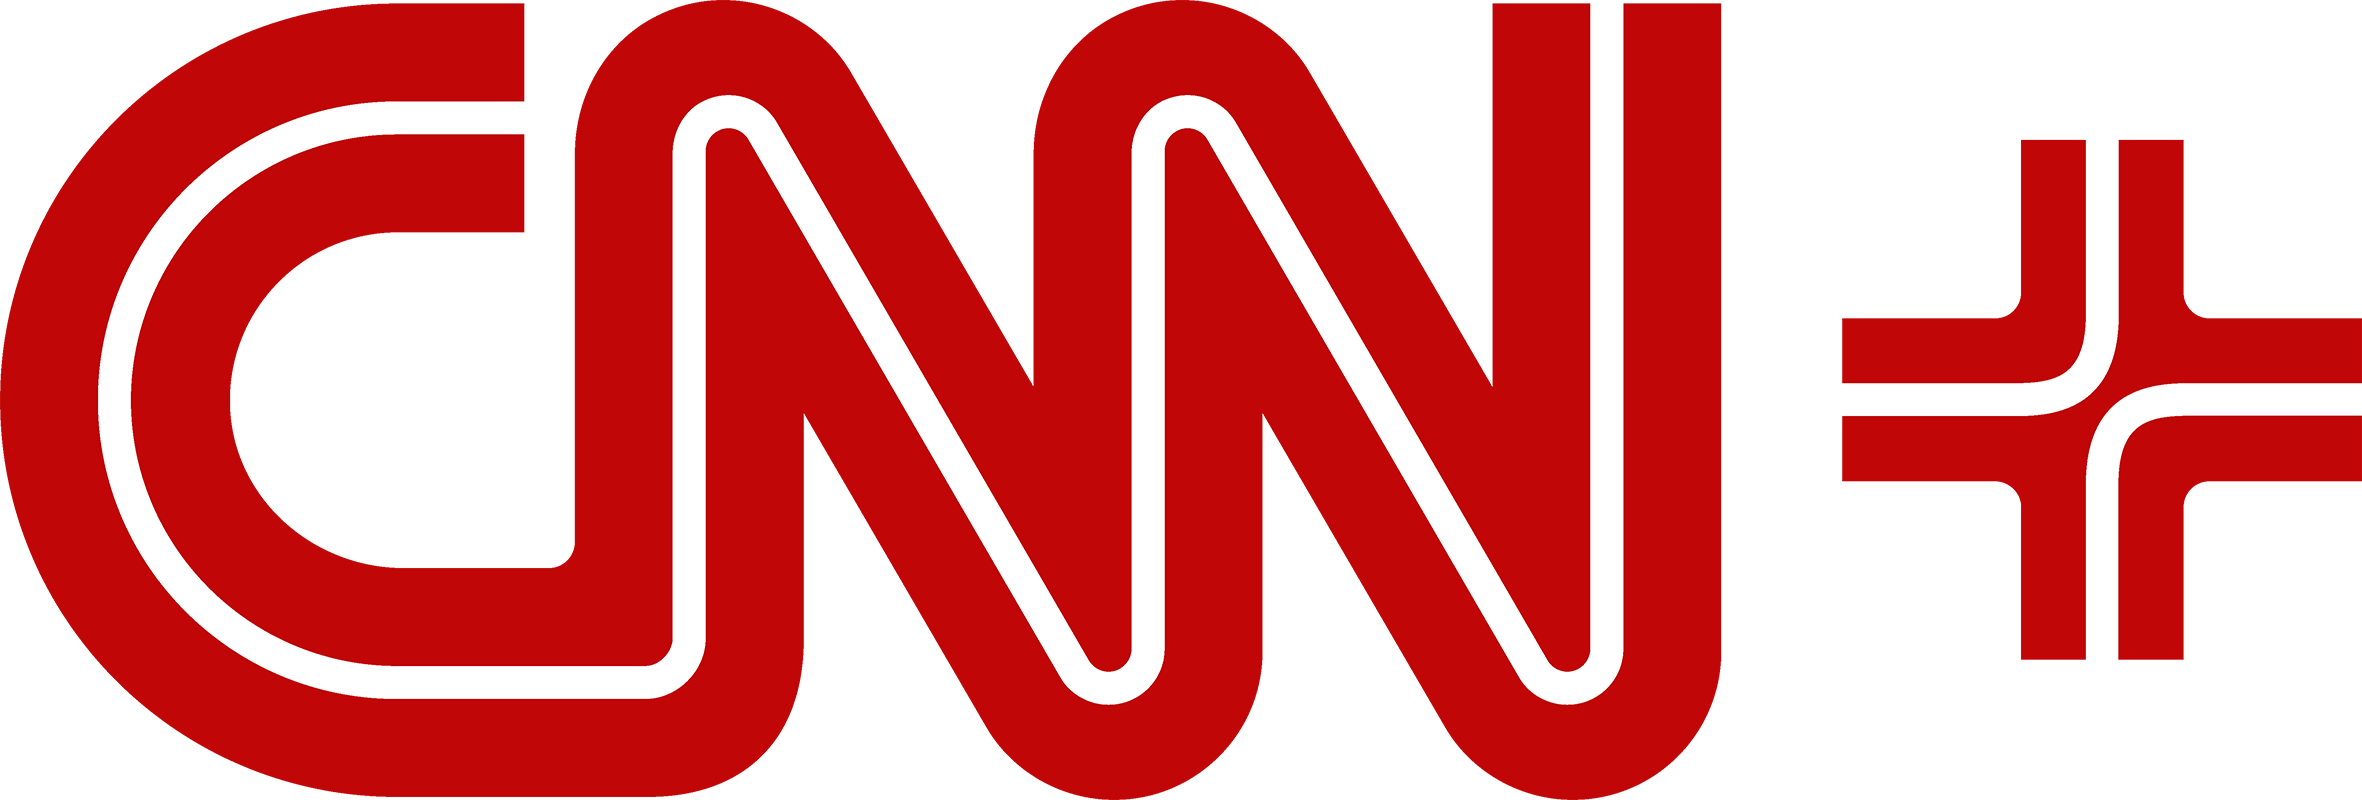 CNN_logo_1